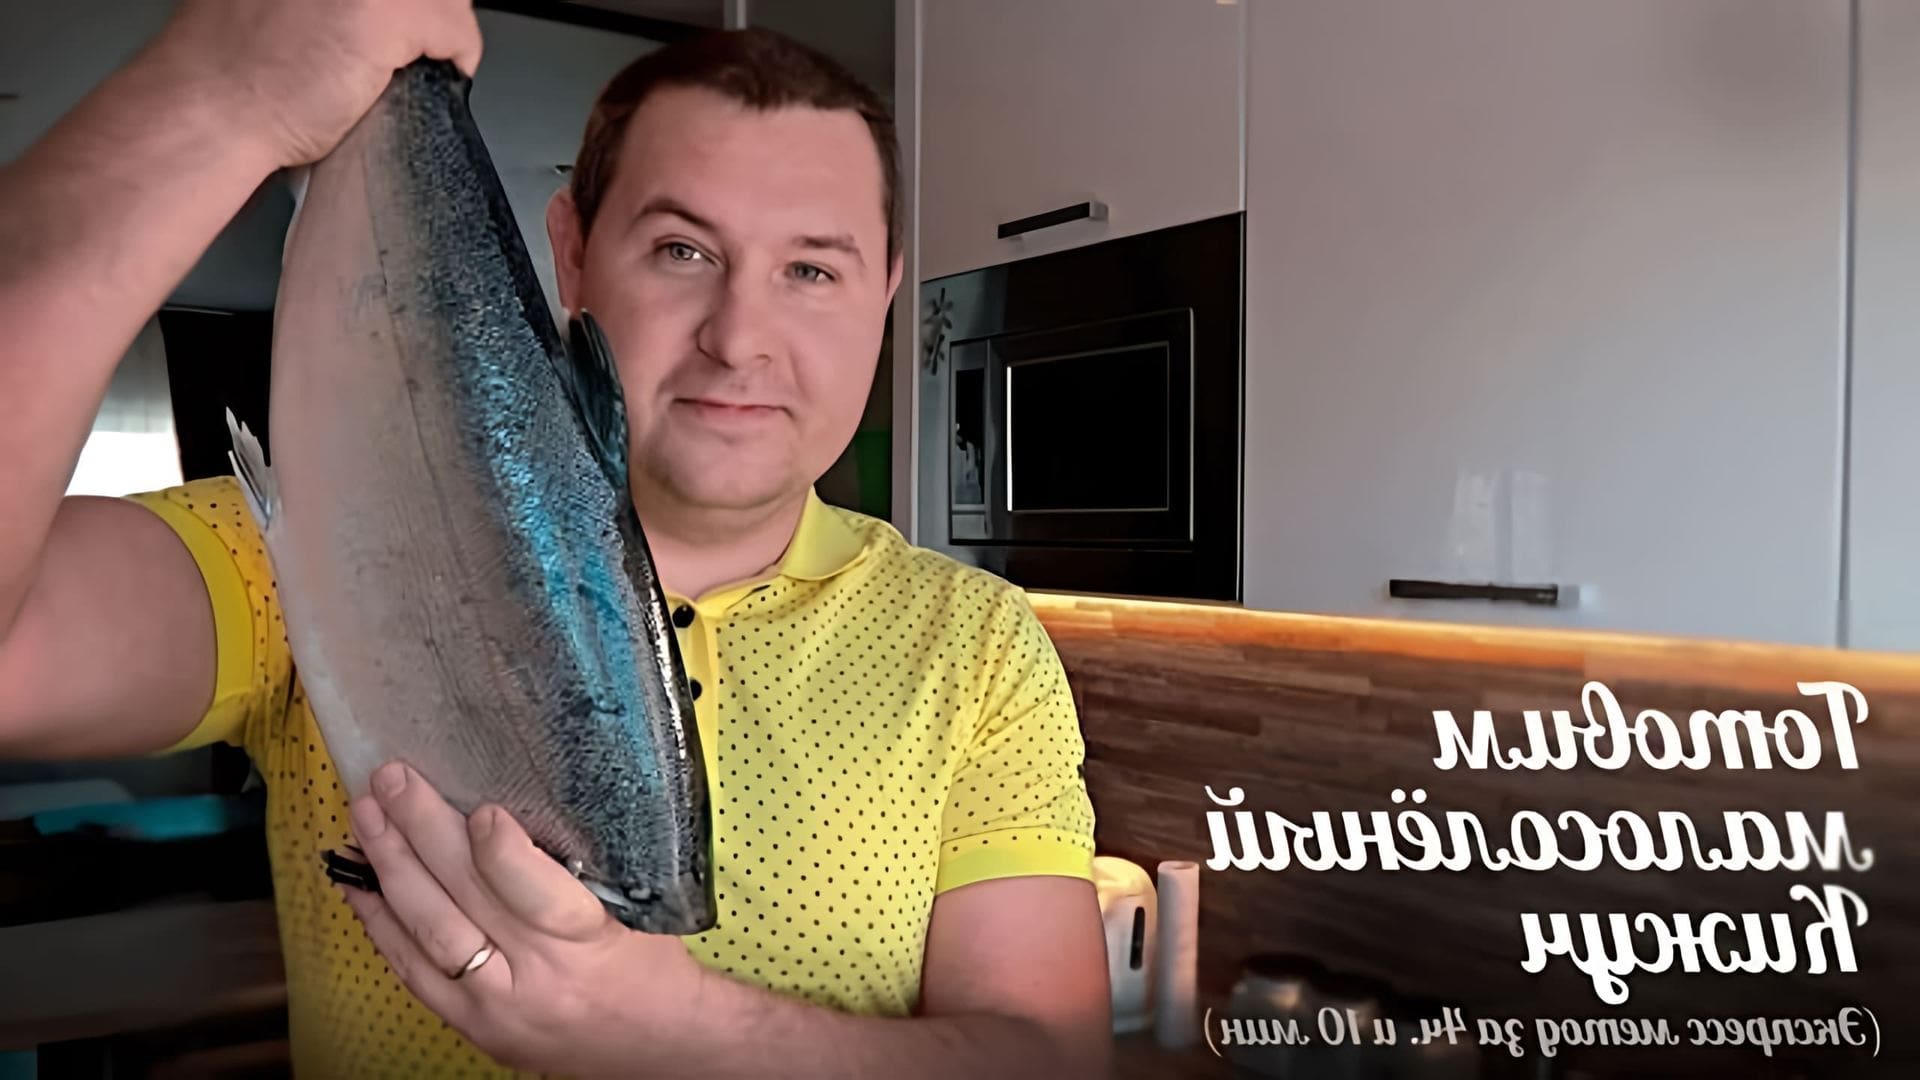 Видео как приготовить малосоленый кижуч, который представляет собой слегка посоленную красную рыбу или лосось